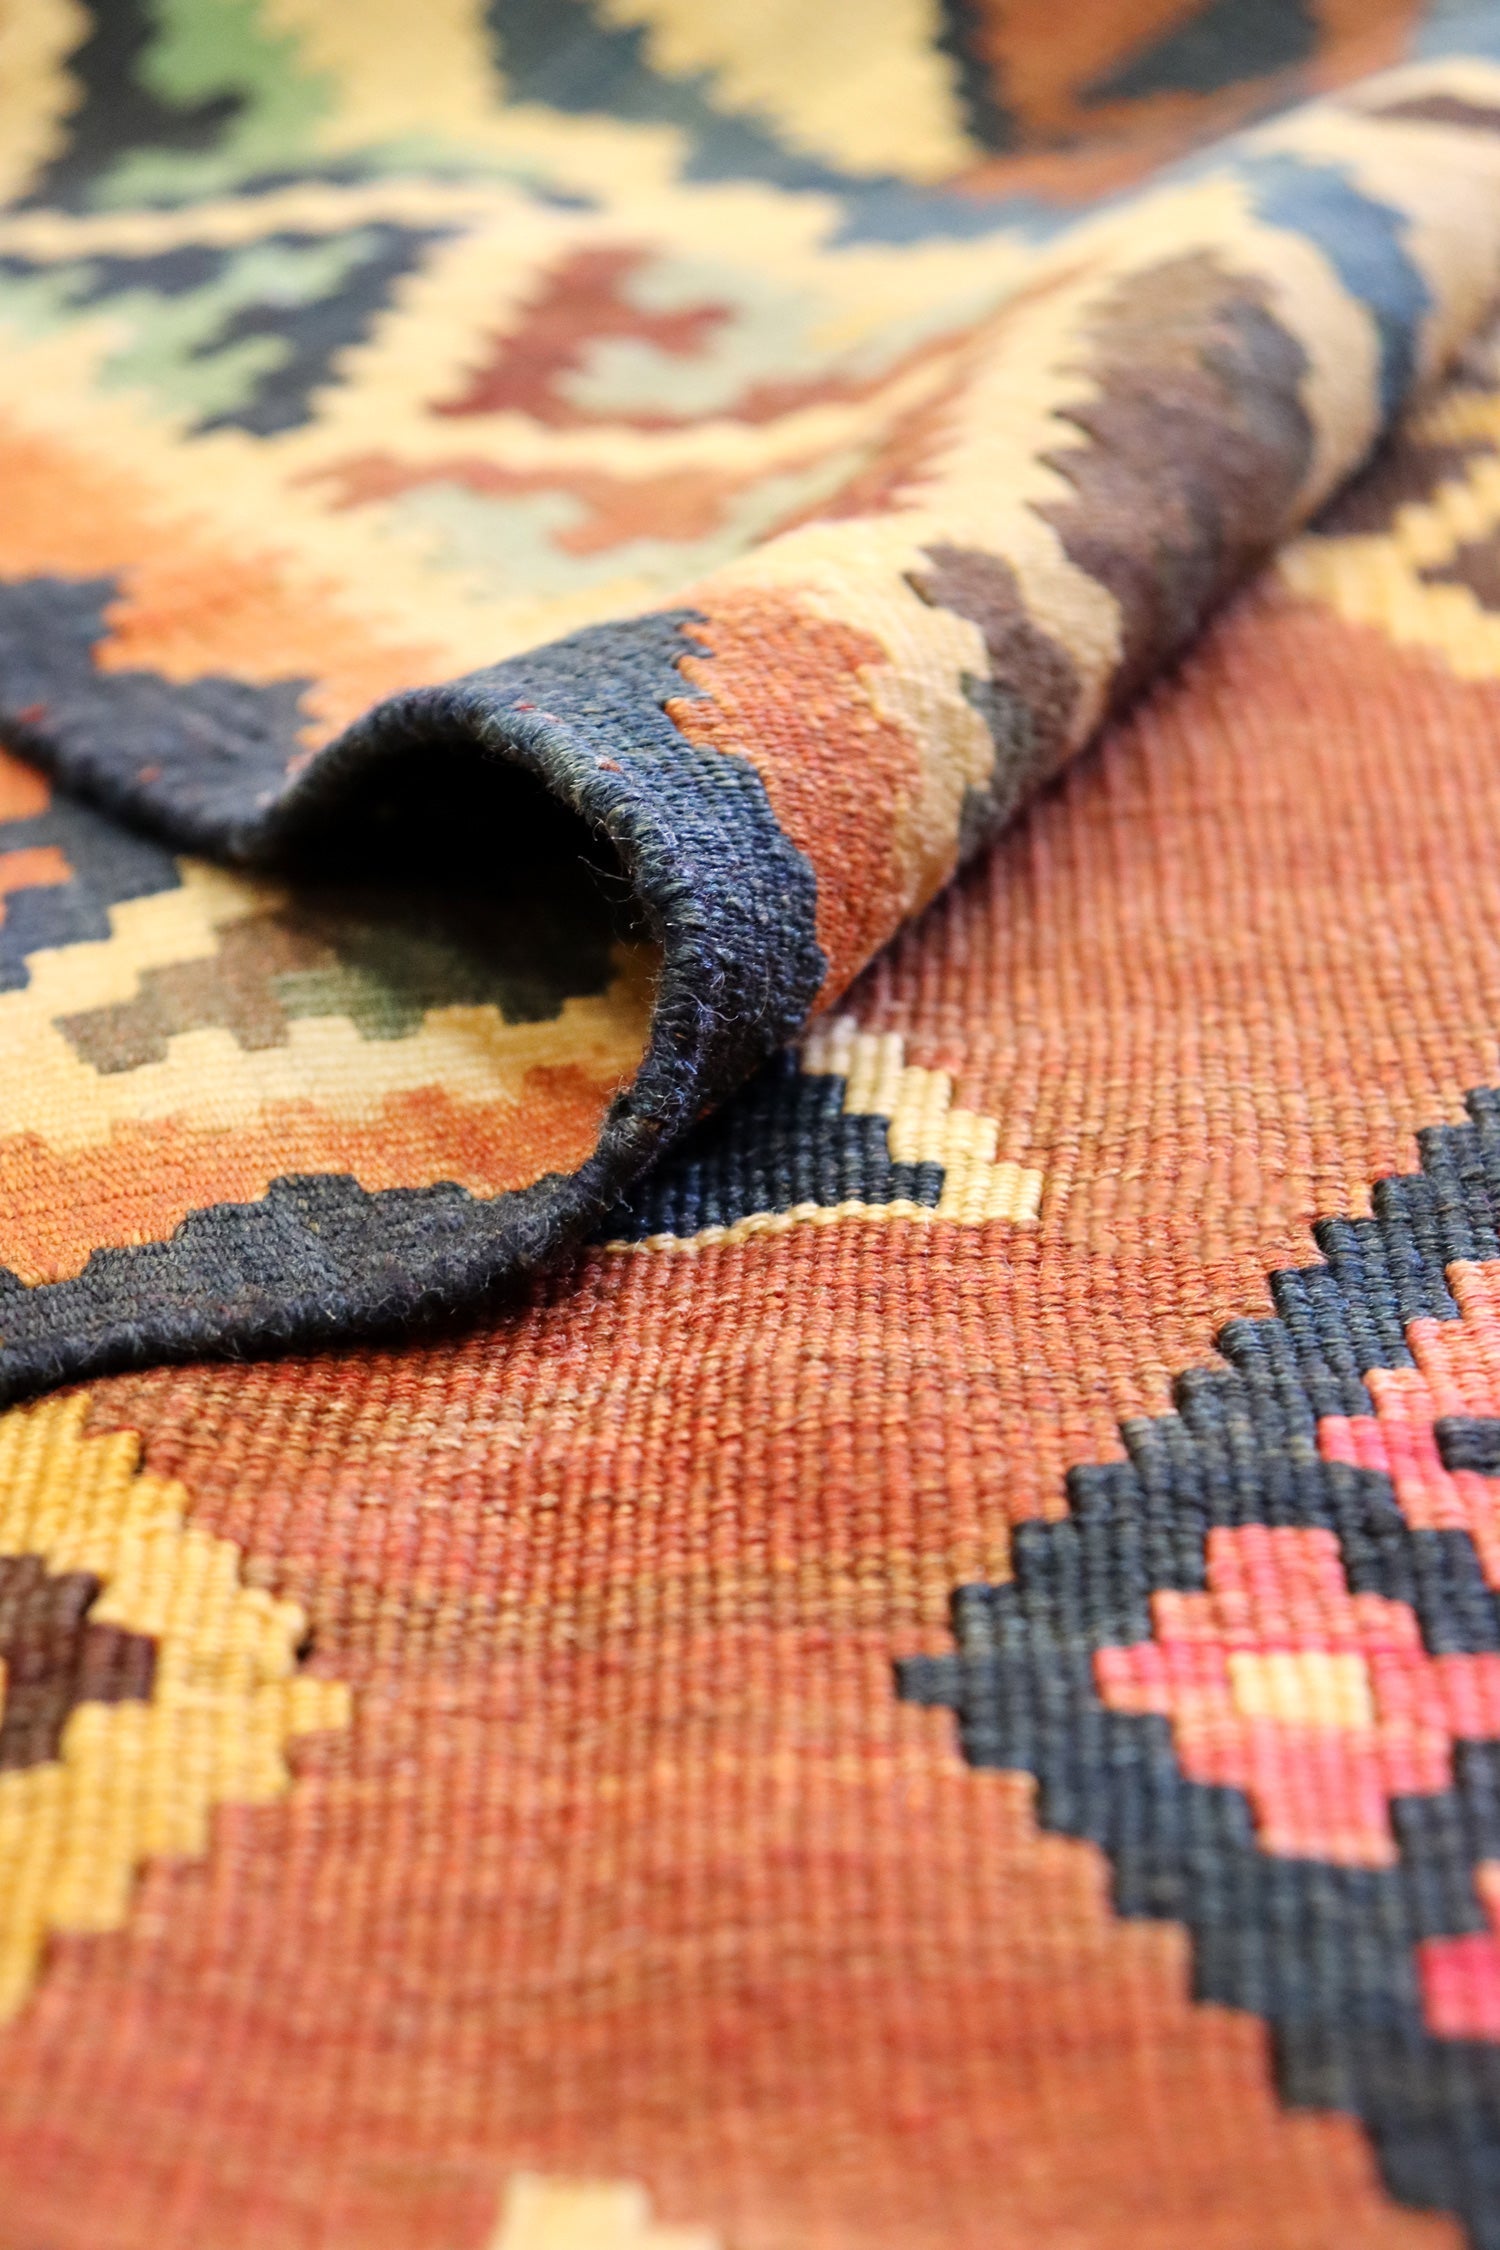 Vintage Qashqai Kilim Handwoven Tribal Rug